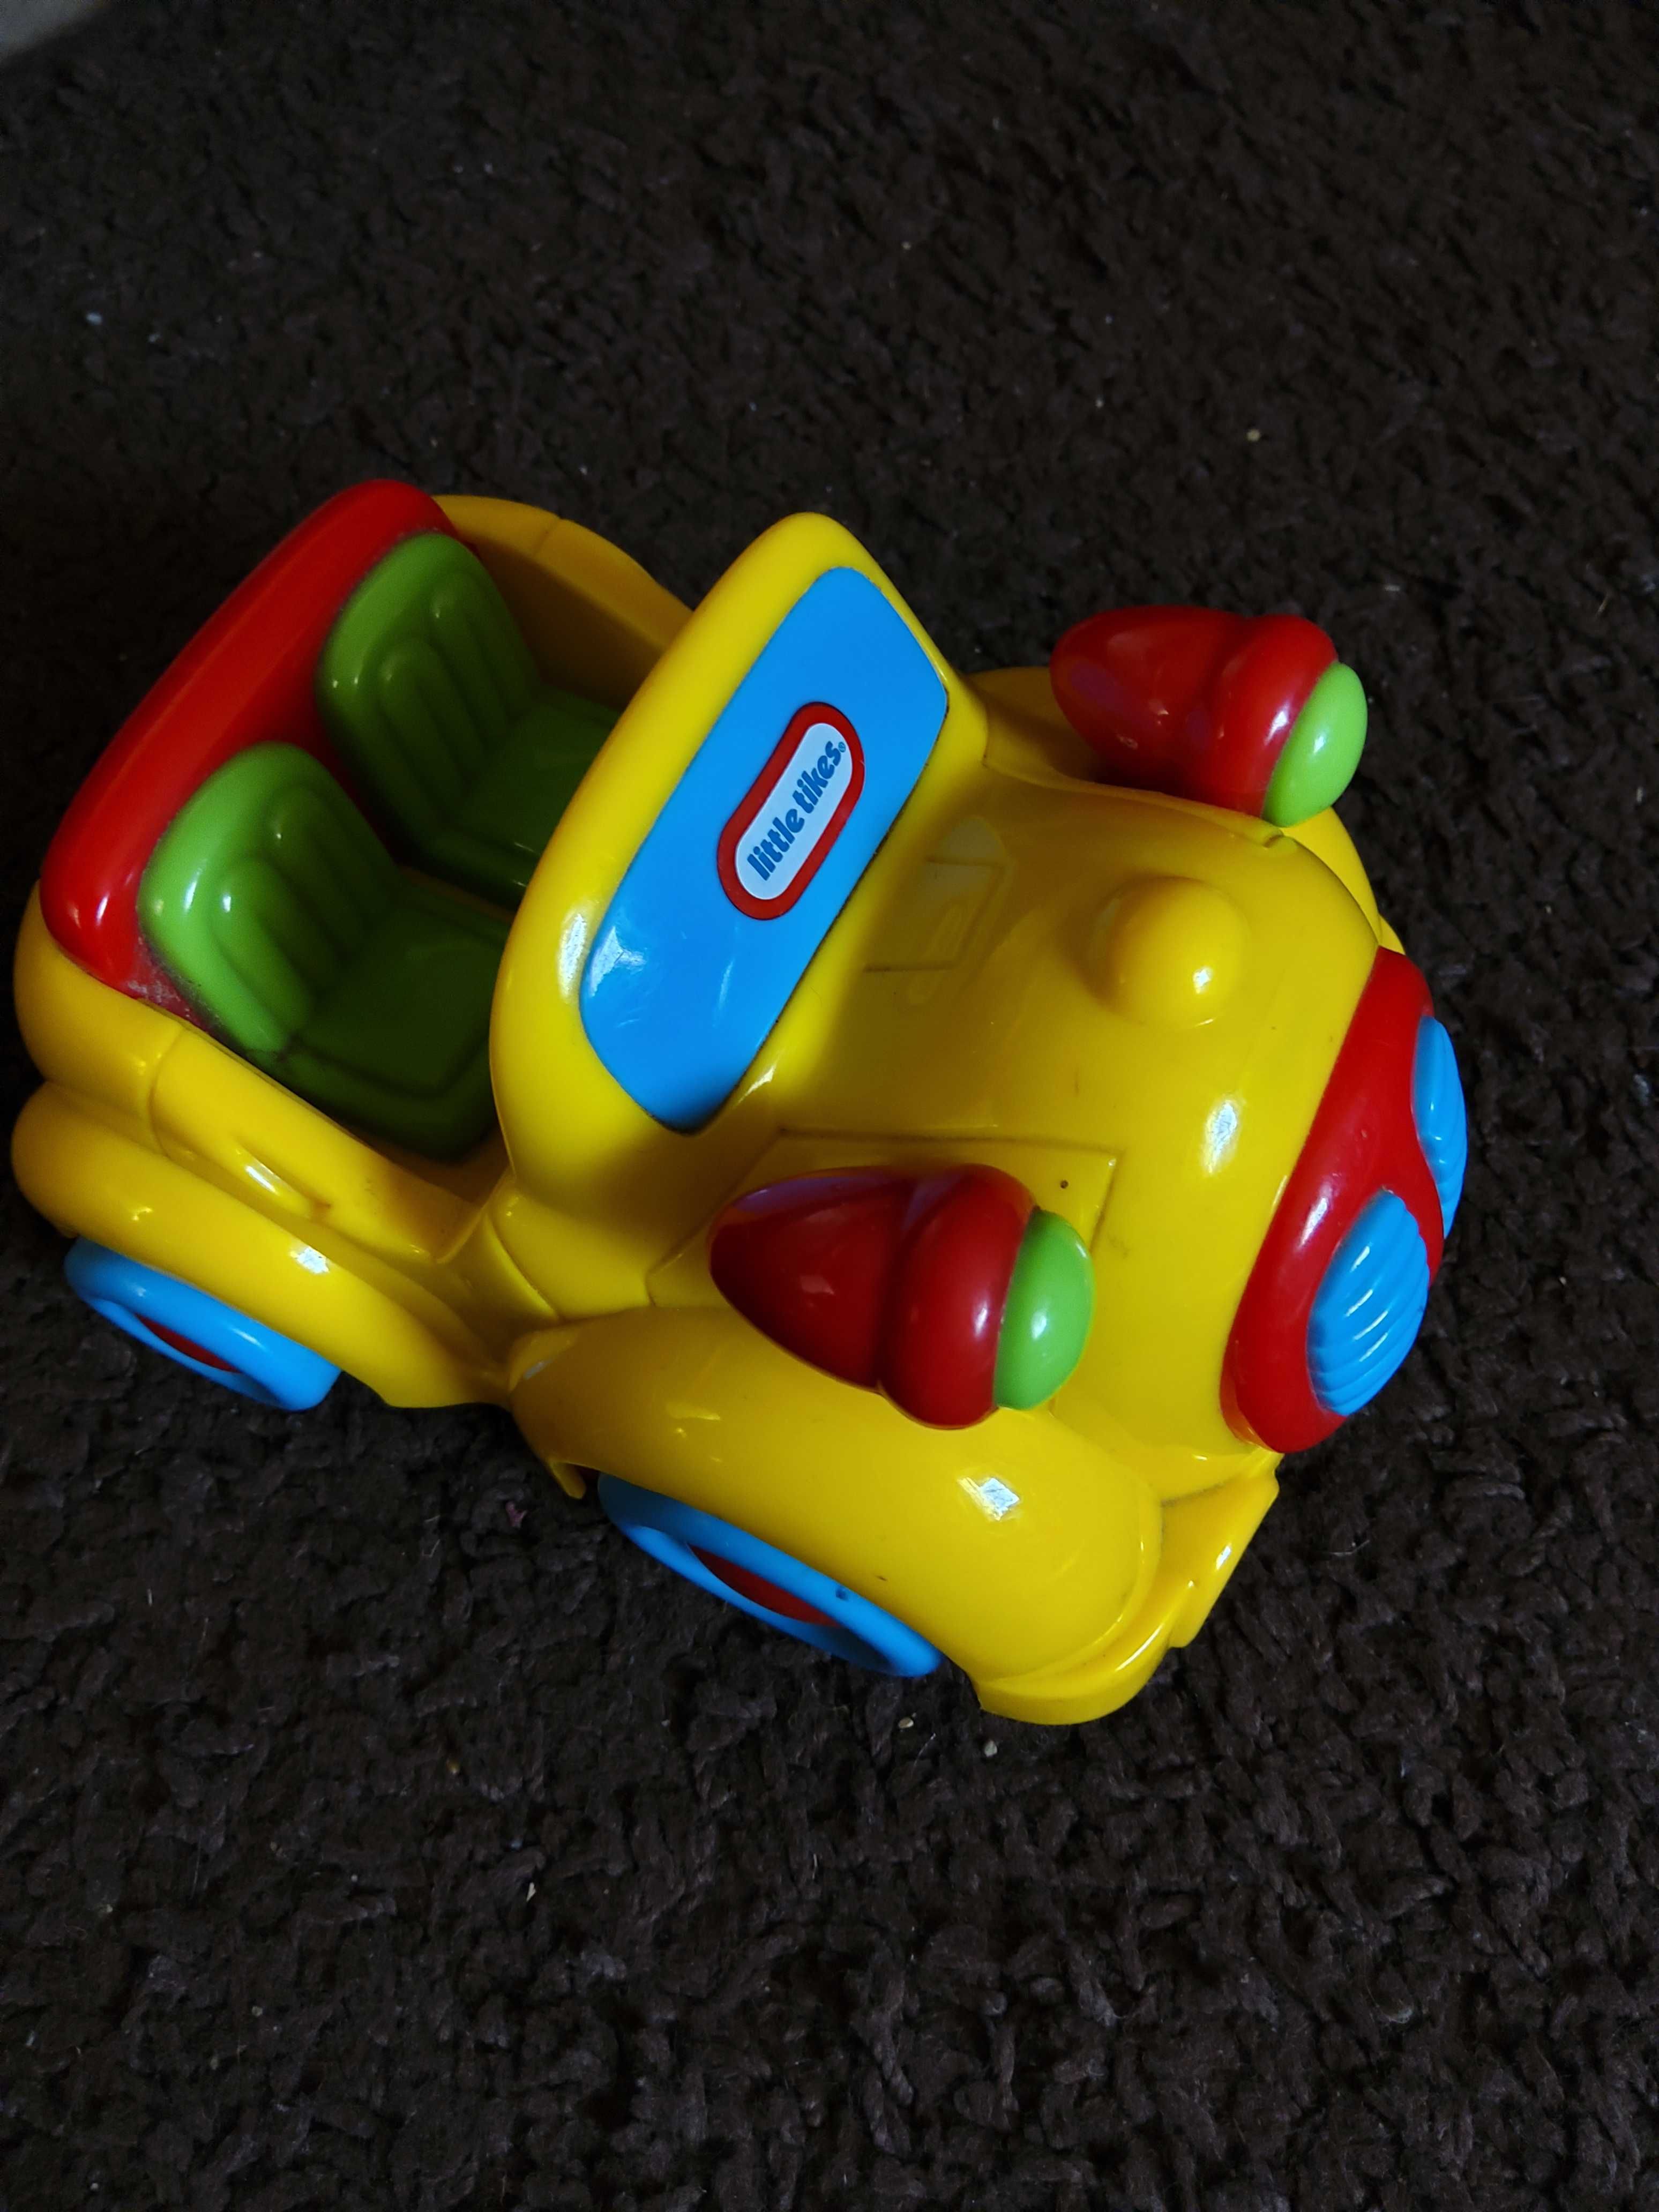 Zabawka samochodzik z napędem little tikes